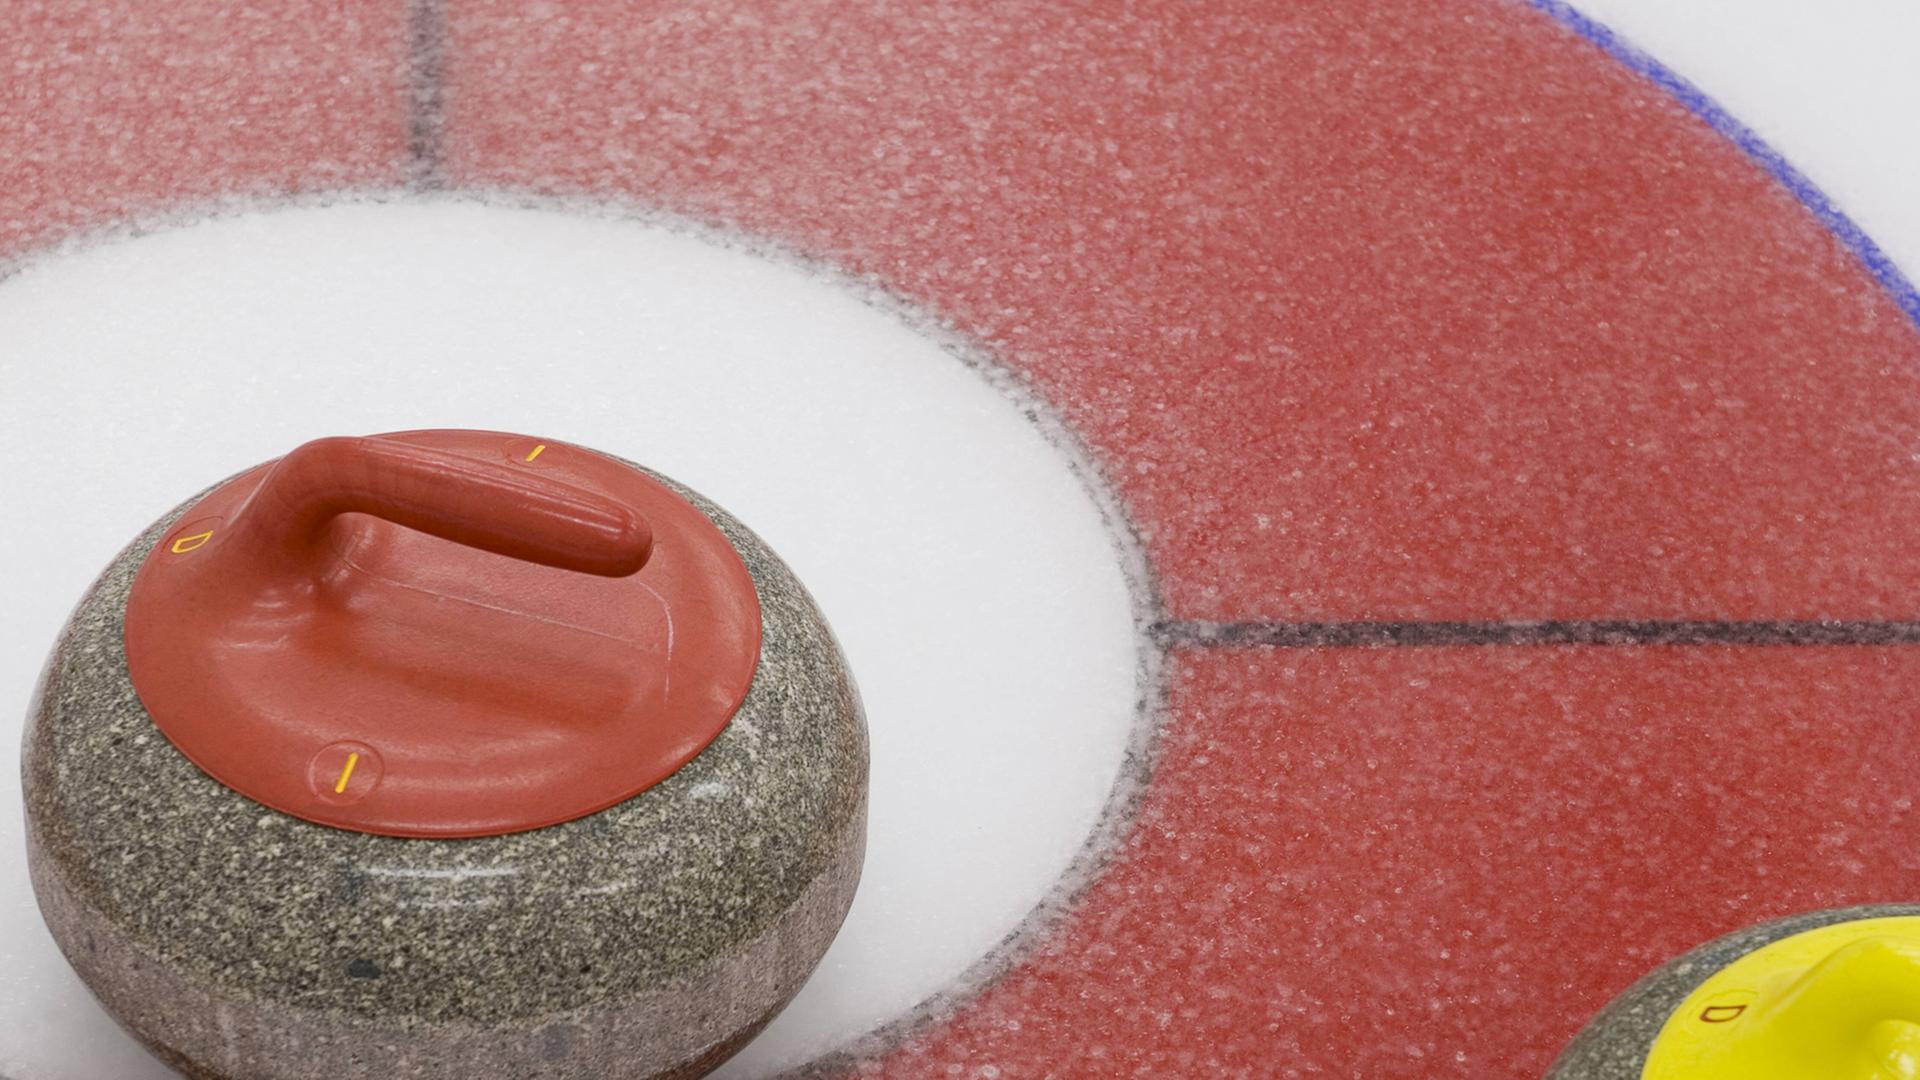 Curling rocks ,die Spielsteine aus Granit, auf einer Spielfläche mit Eis.